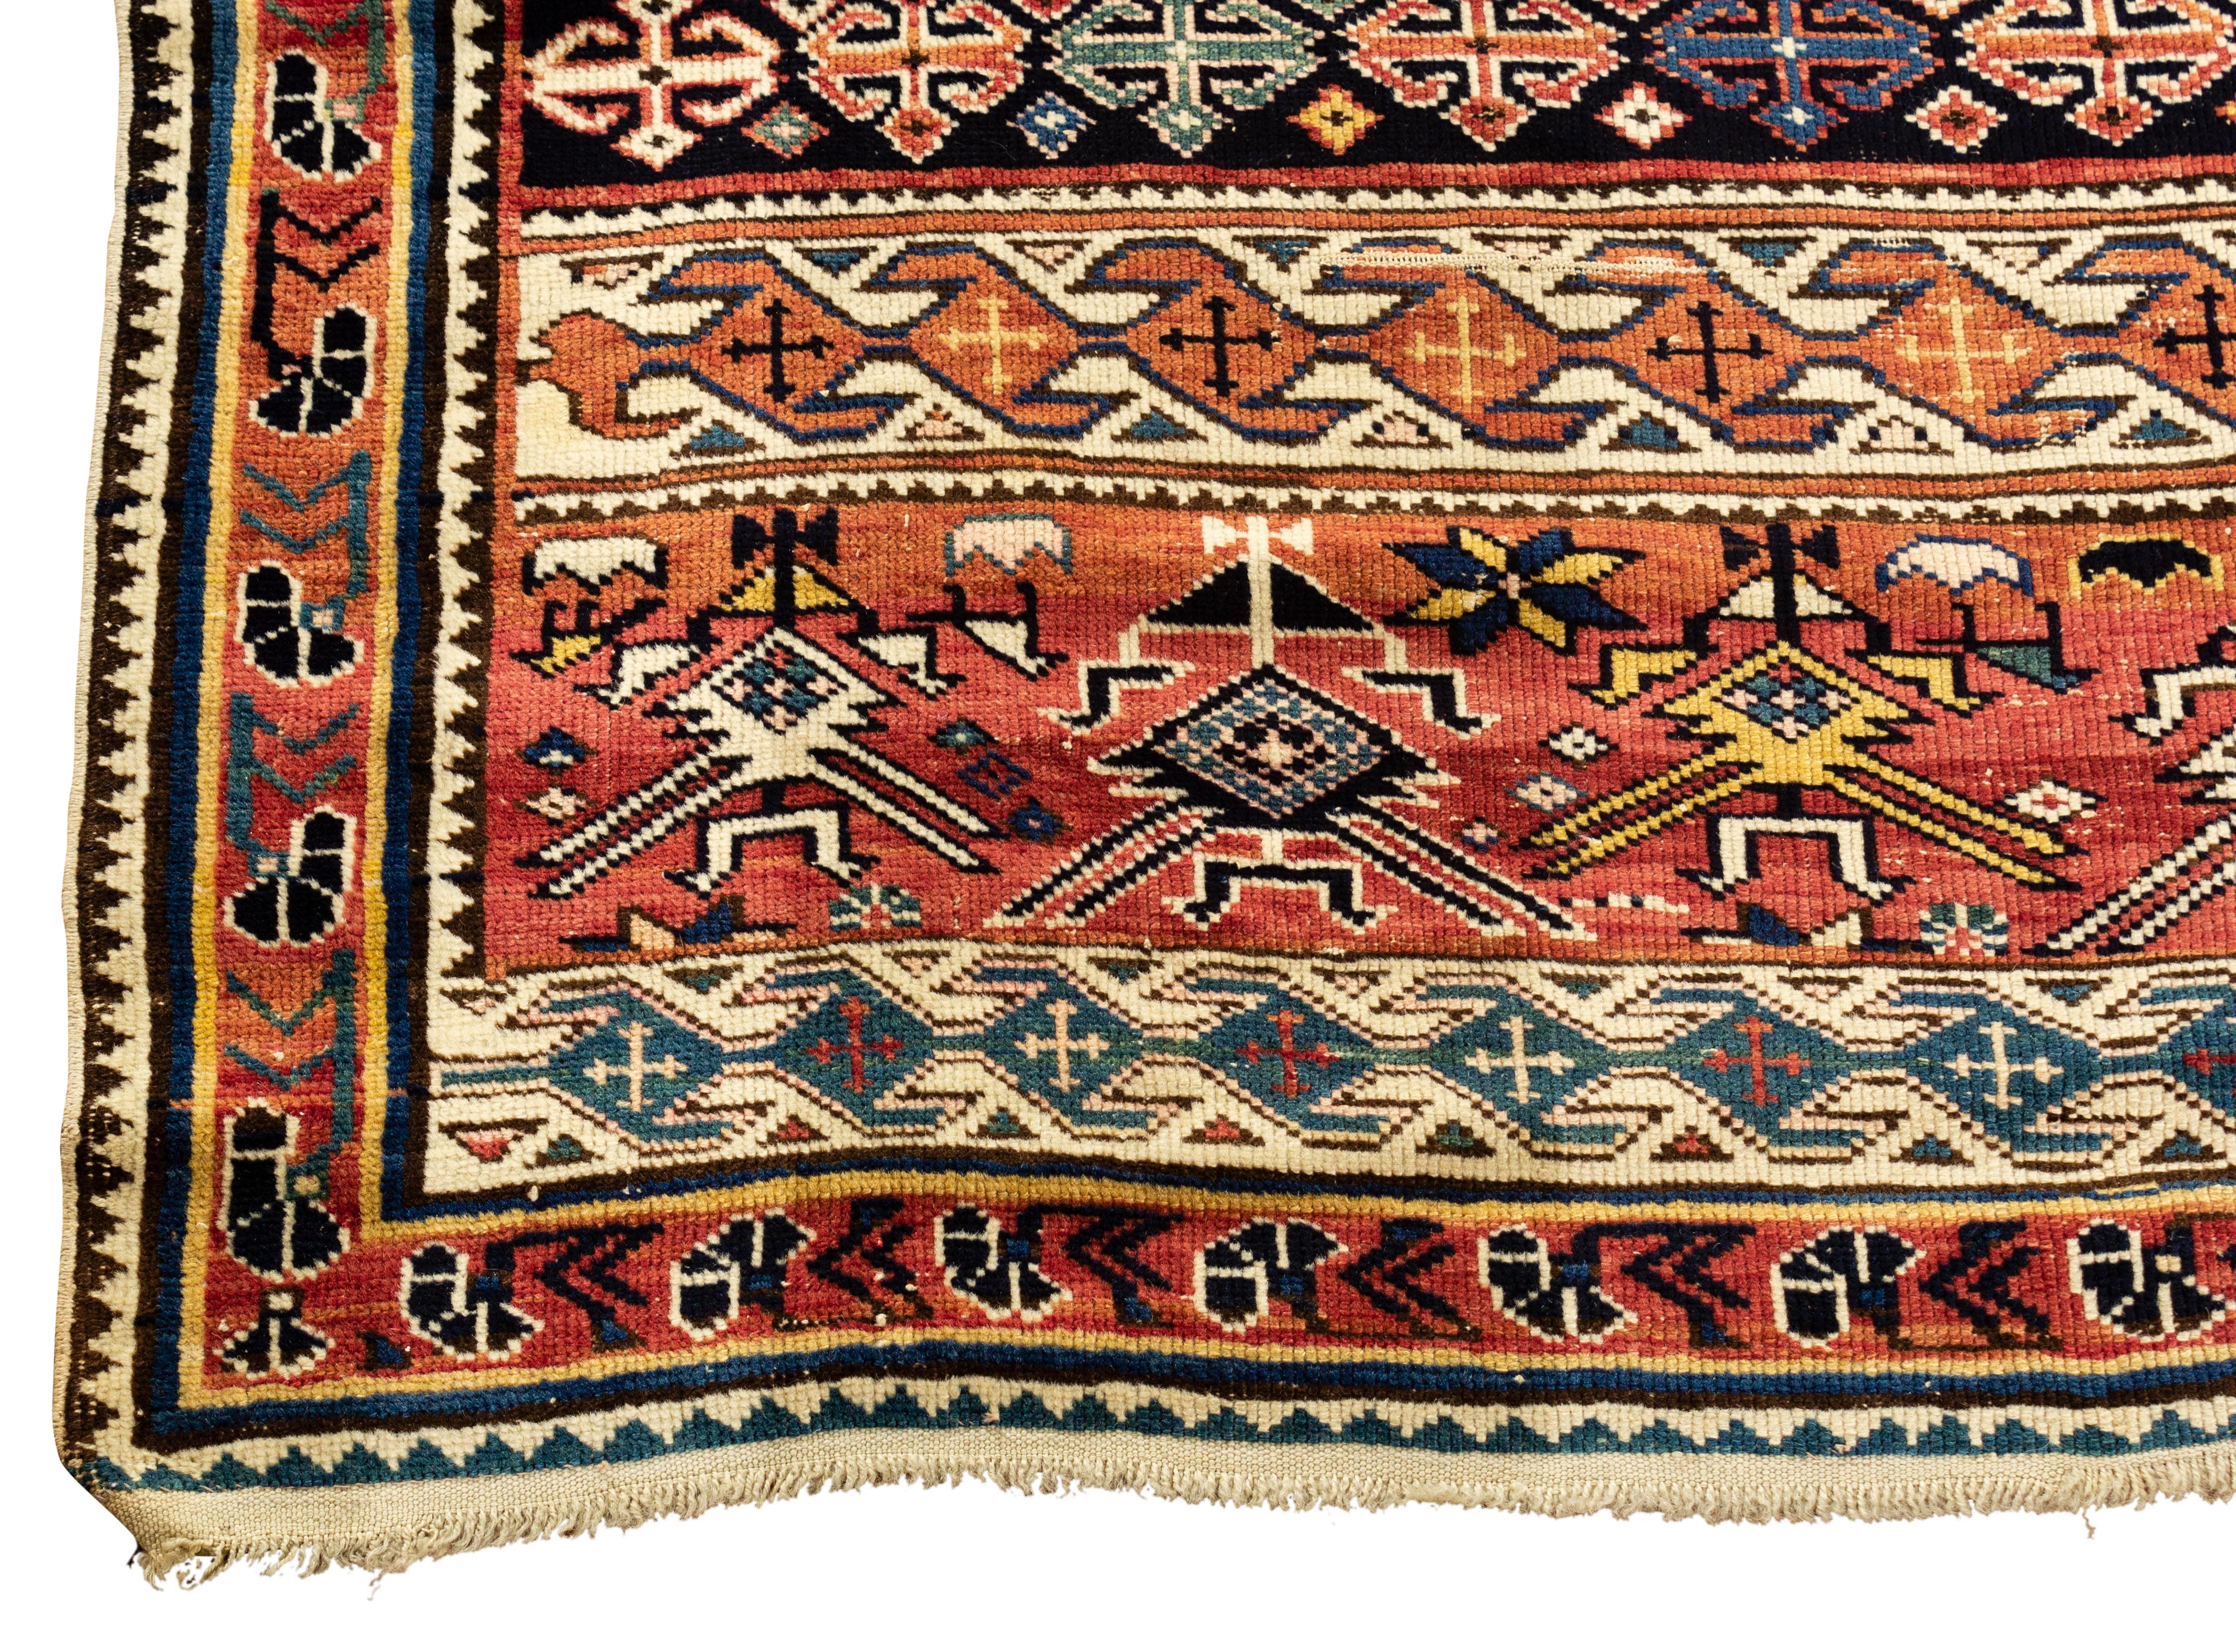 Antiker kaukasischer Schirwan-Teppich, um 1880. Diese Arten von antiken kaukasischen Teppichen wurden im östlichen Teil der Region gewebt, vor allem entlang der Westküste des Kaspischen Meeres. Das Hauptfeld ist voll von traditionellen Mustern in